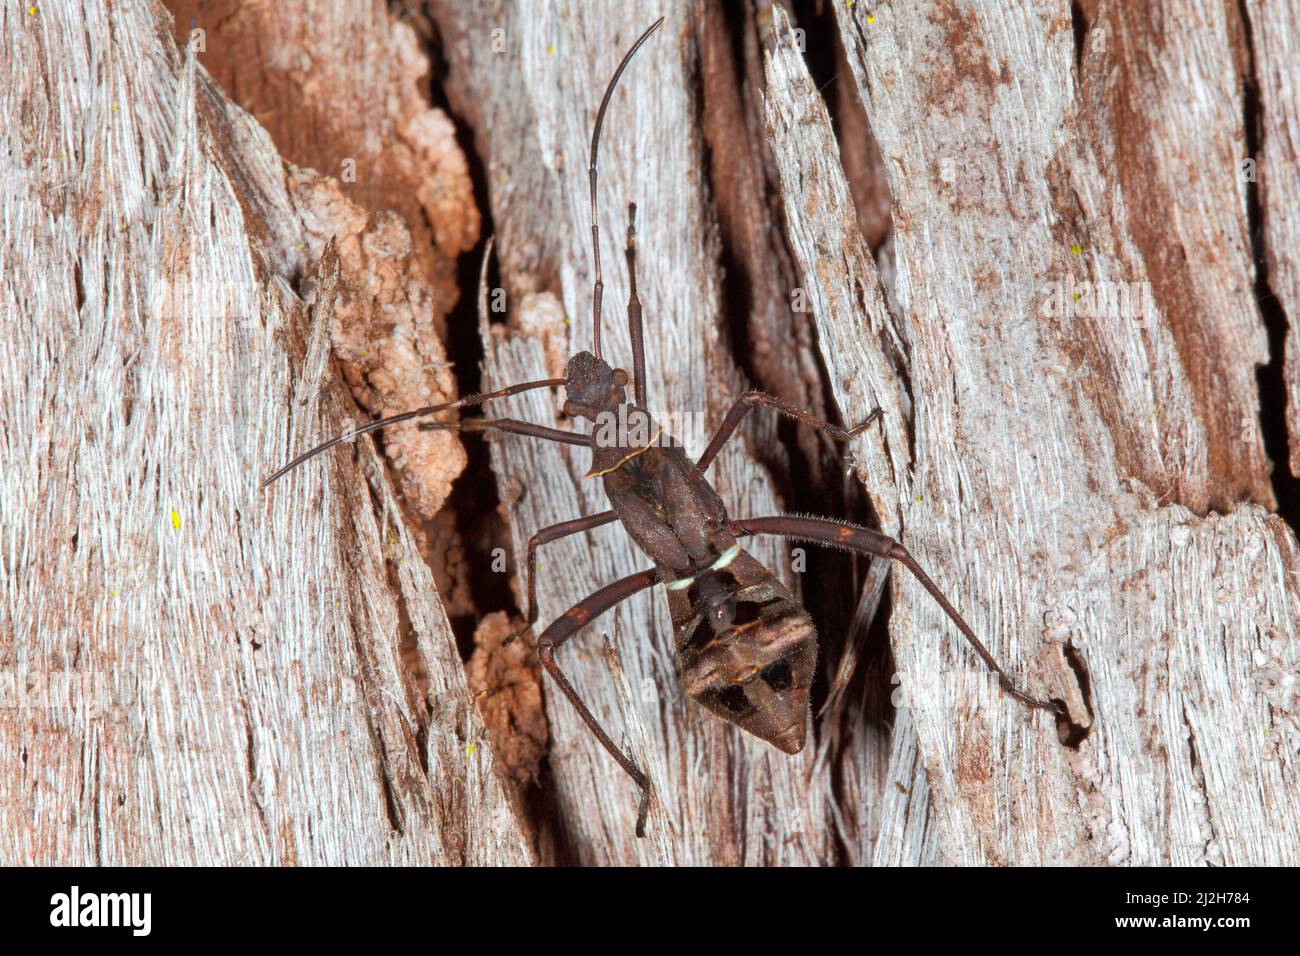 Bogue d'aspiration de gousse, Riptortus serripes. Également connu sous le nom de Brown Bean Bug. Nymph ou instar. Coffs Harbour, Nouvelle-Galles du Sud, Australie Banque D'Images